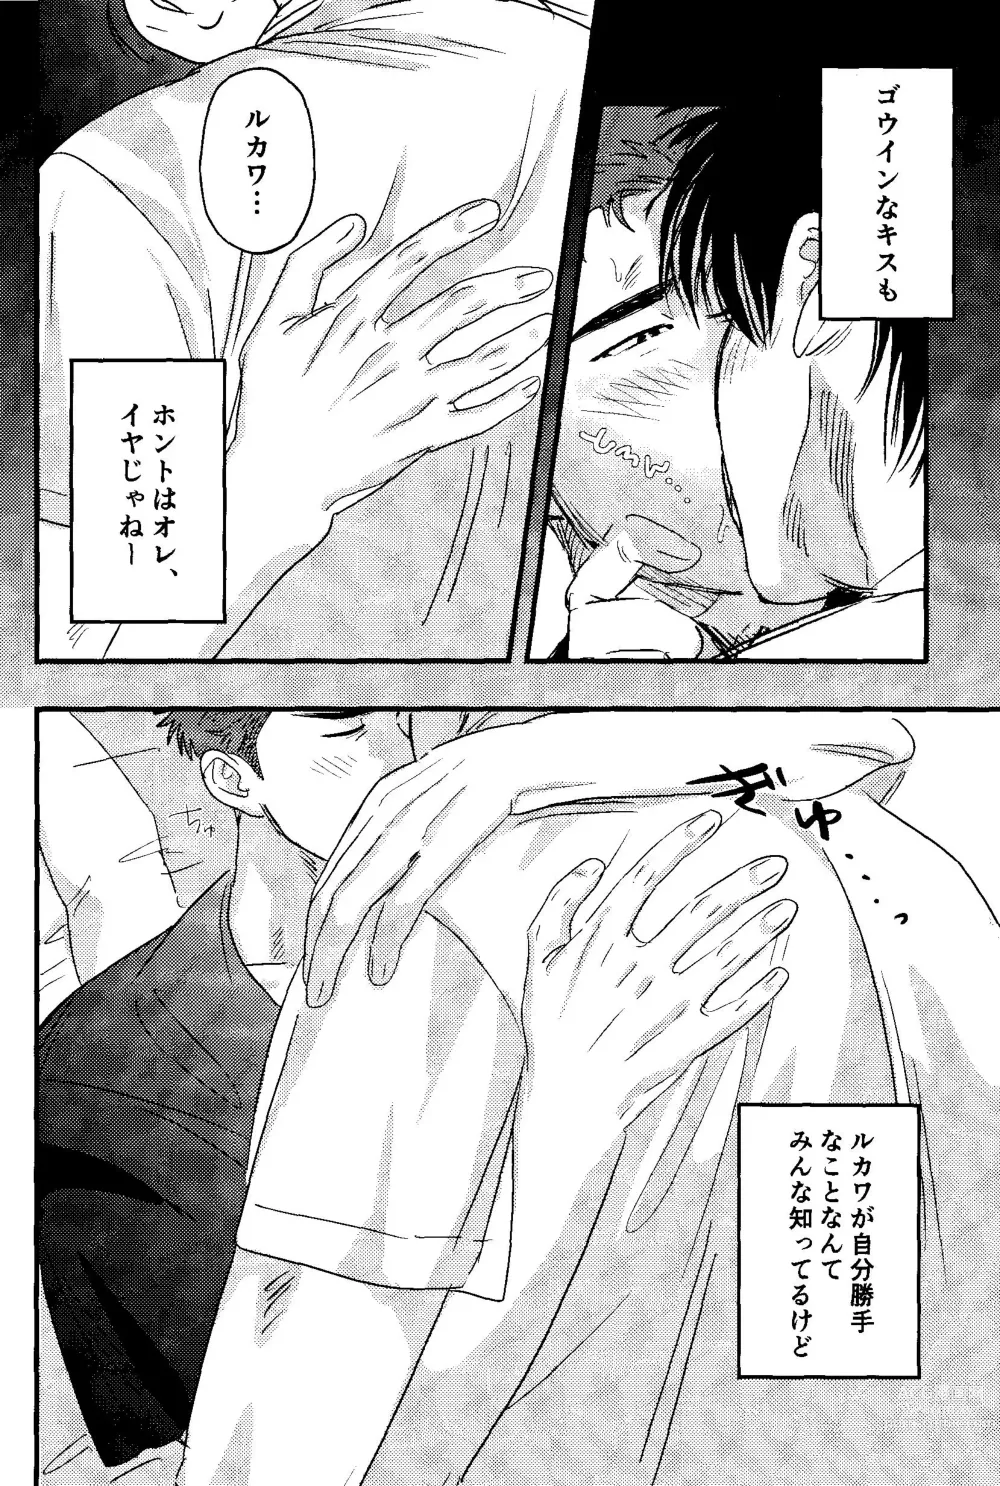 Page 21 of doujinshi Jibun Katte ni Aishiteru